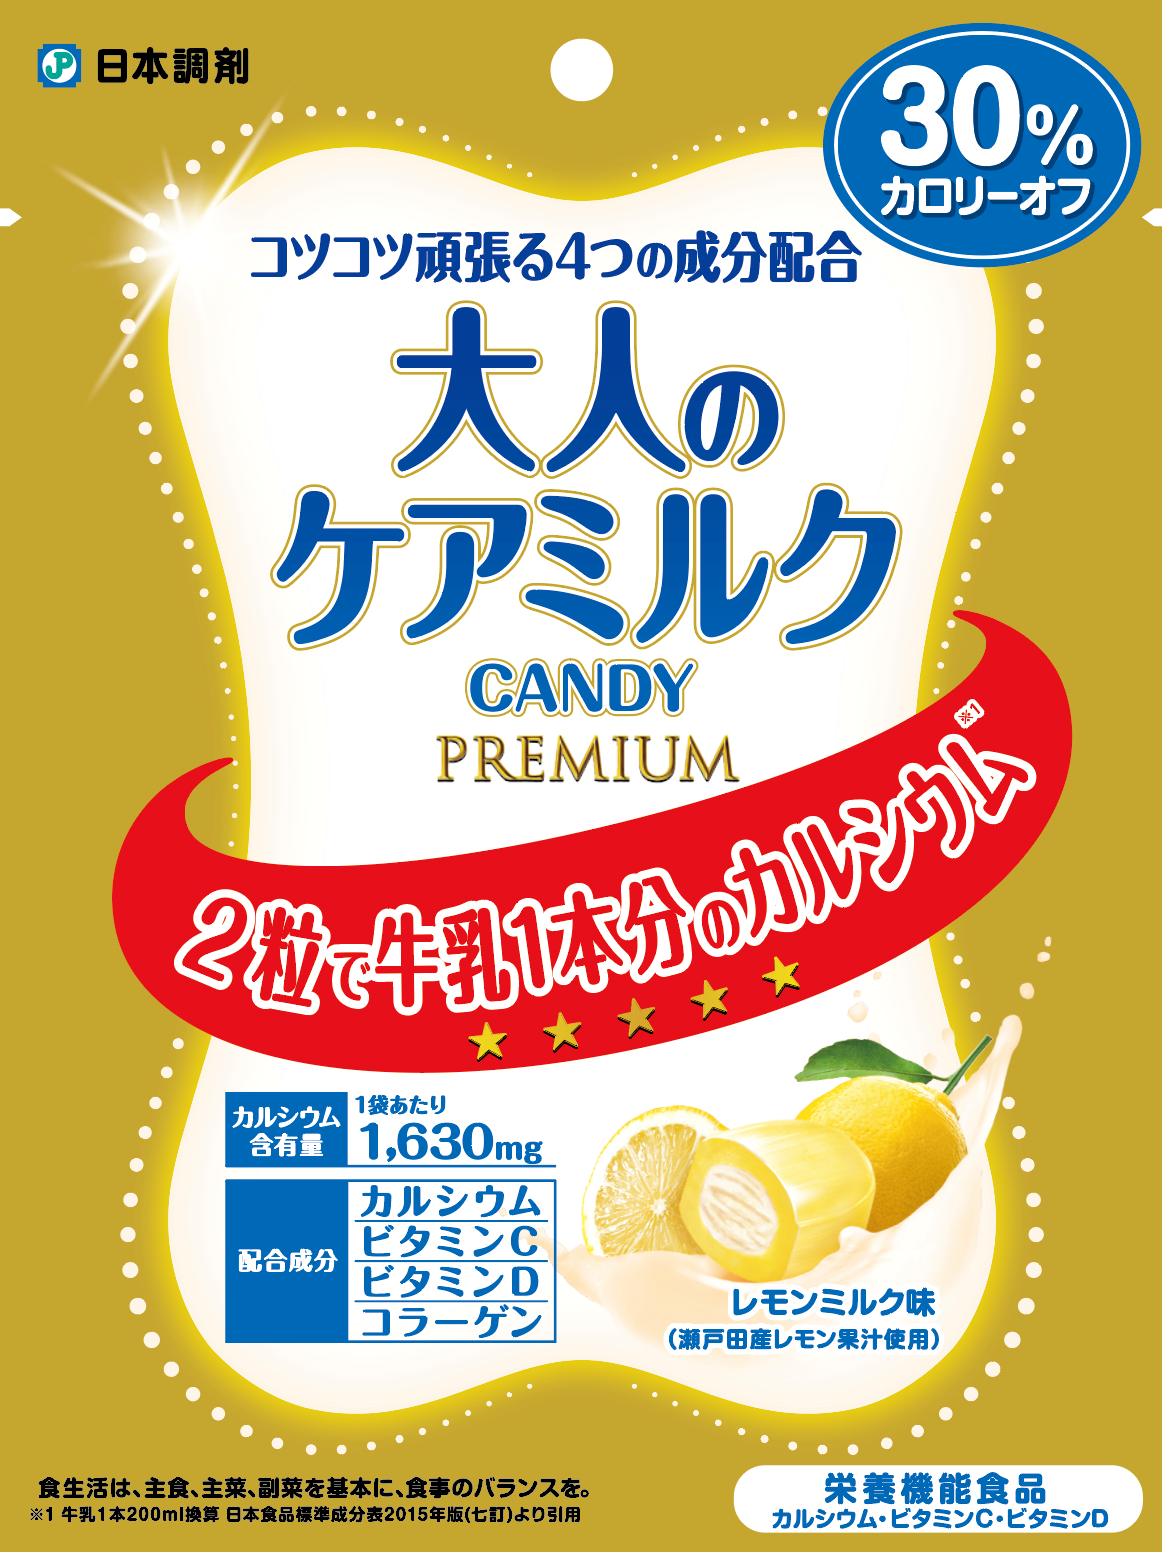 日本調剤PB「大人のケアミルクCANDY PREMIUM」の画像